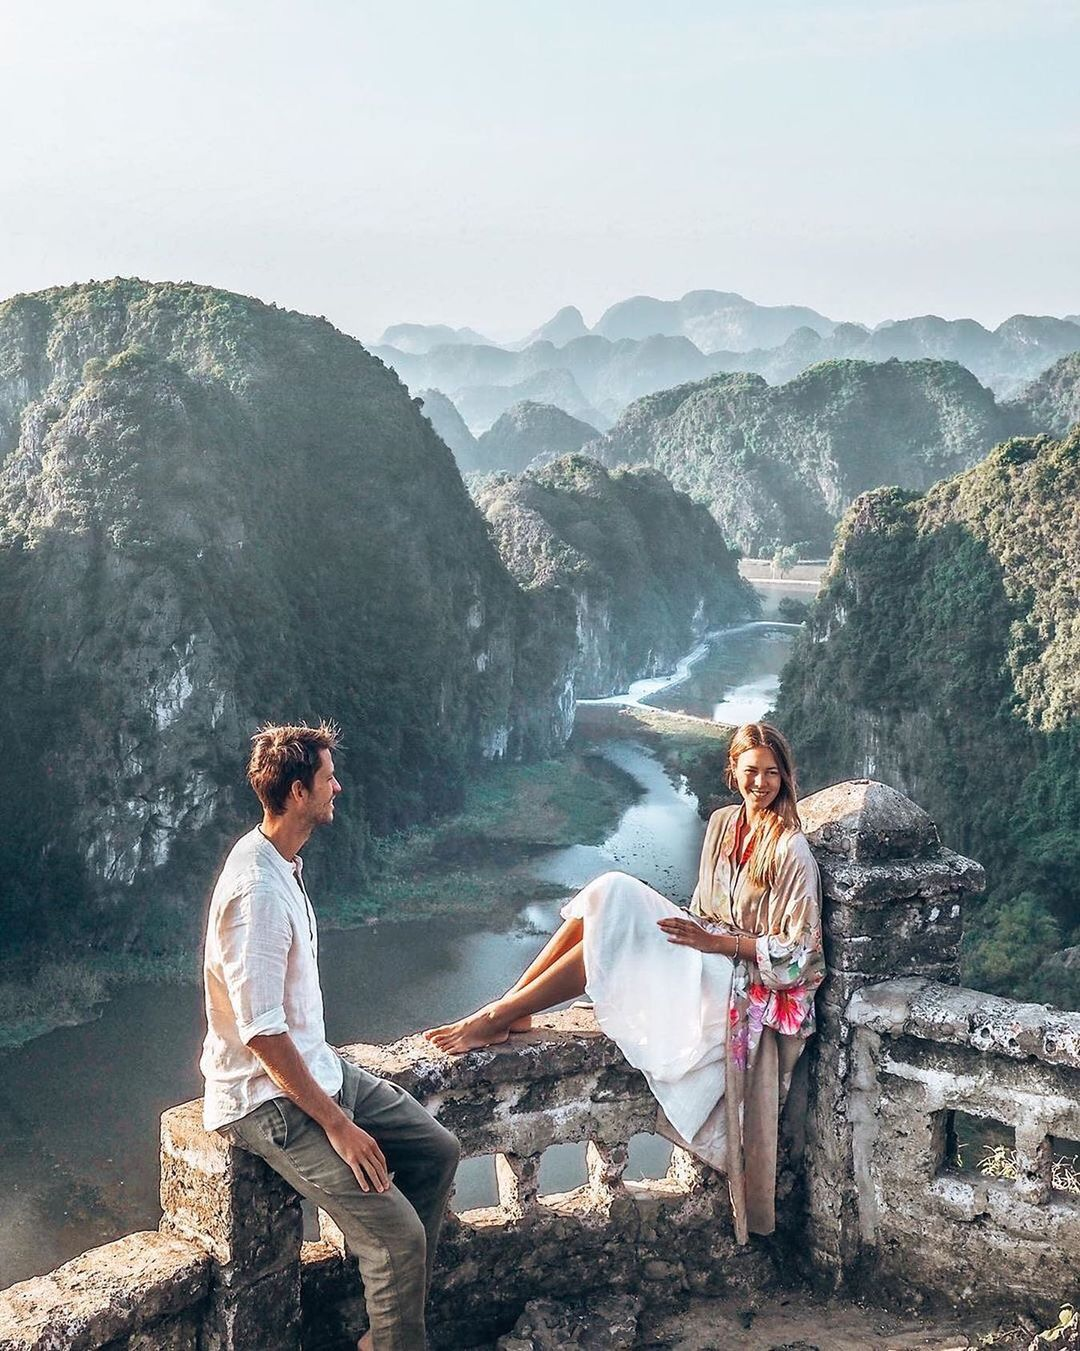 Top Beautiful Spots For Instagram "Check-in" in Vietnam